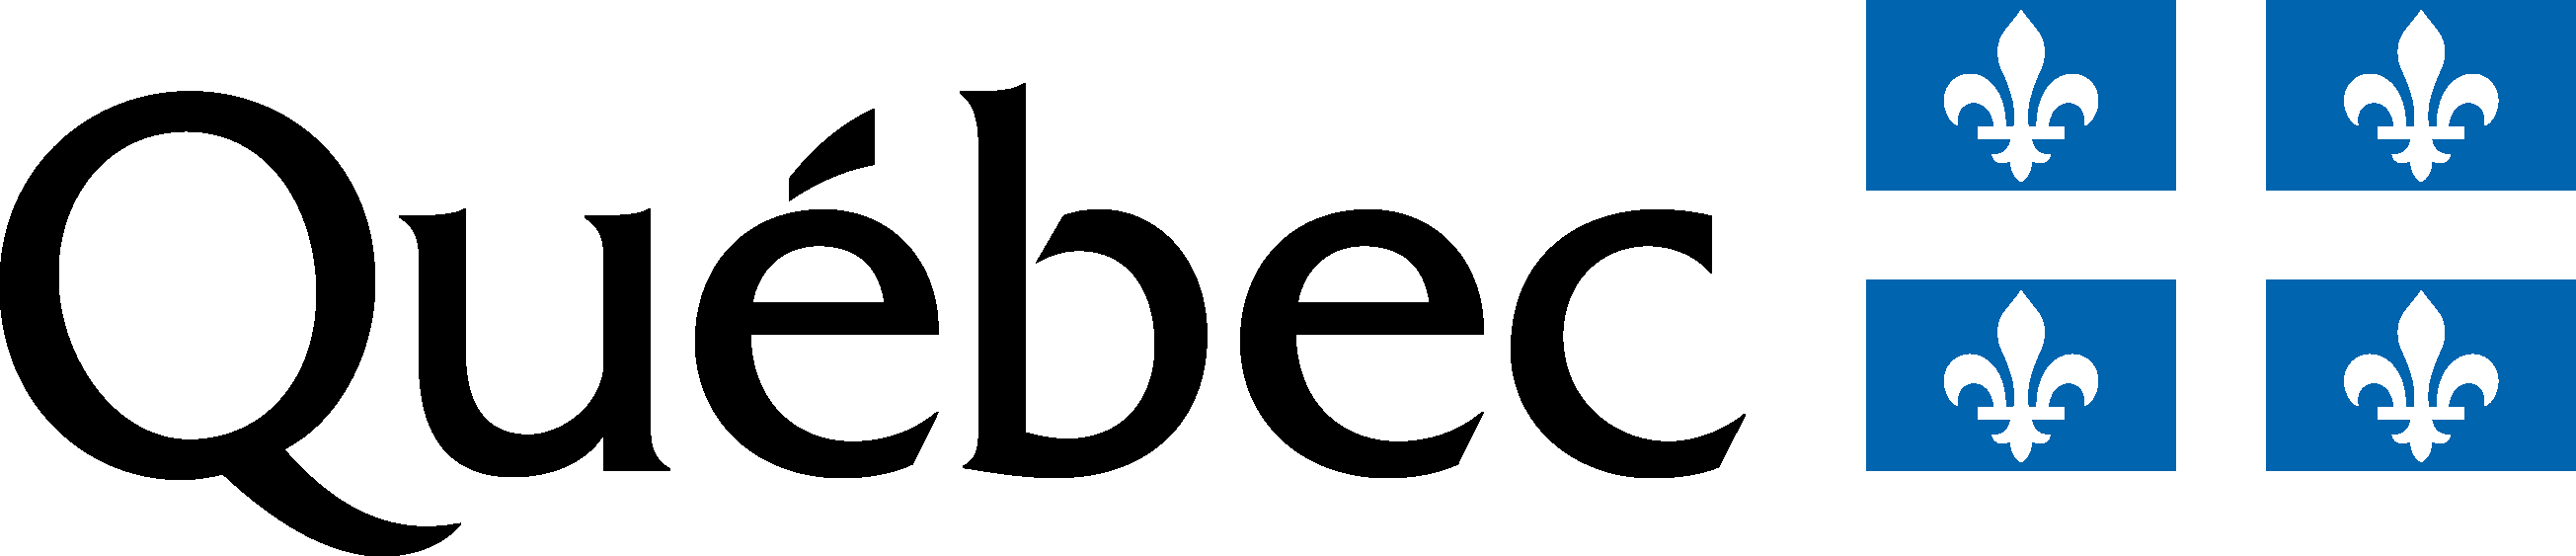 Logo gouvernement Couleur